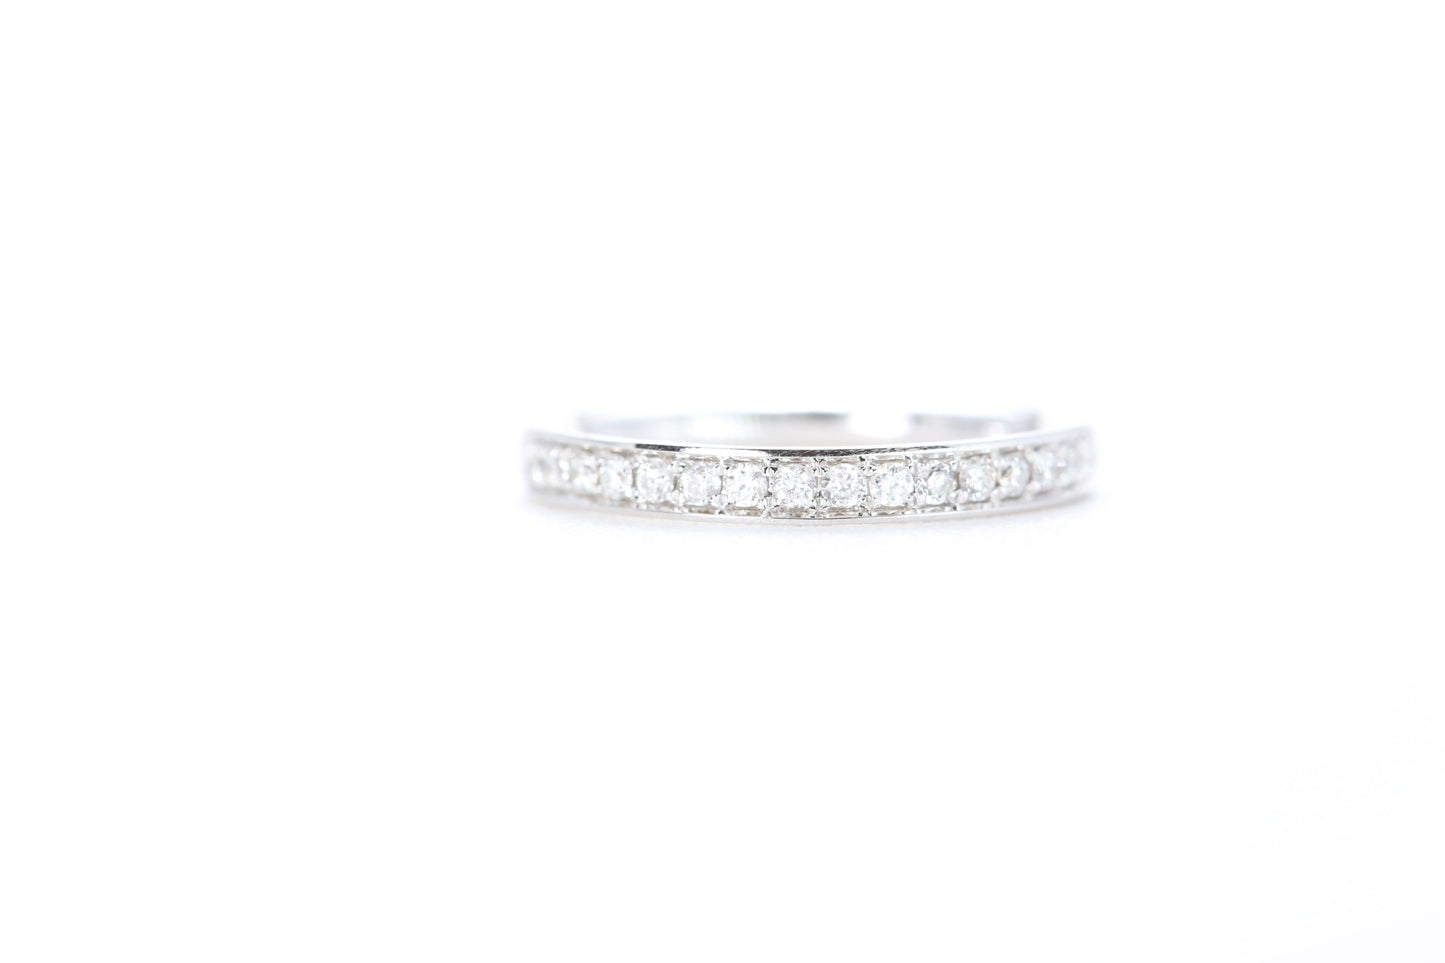 Single Row Pavé Diamond Ring 1/5 Carat